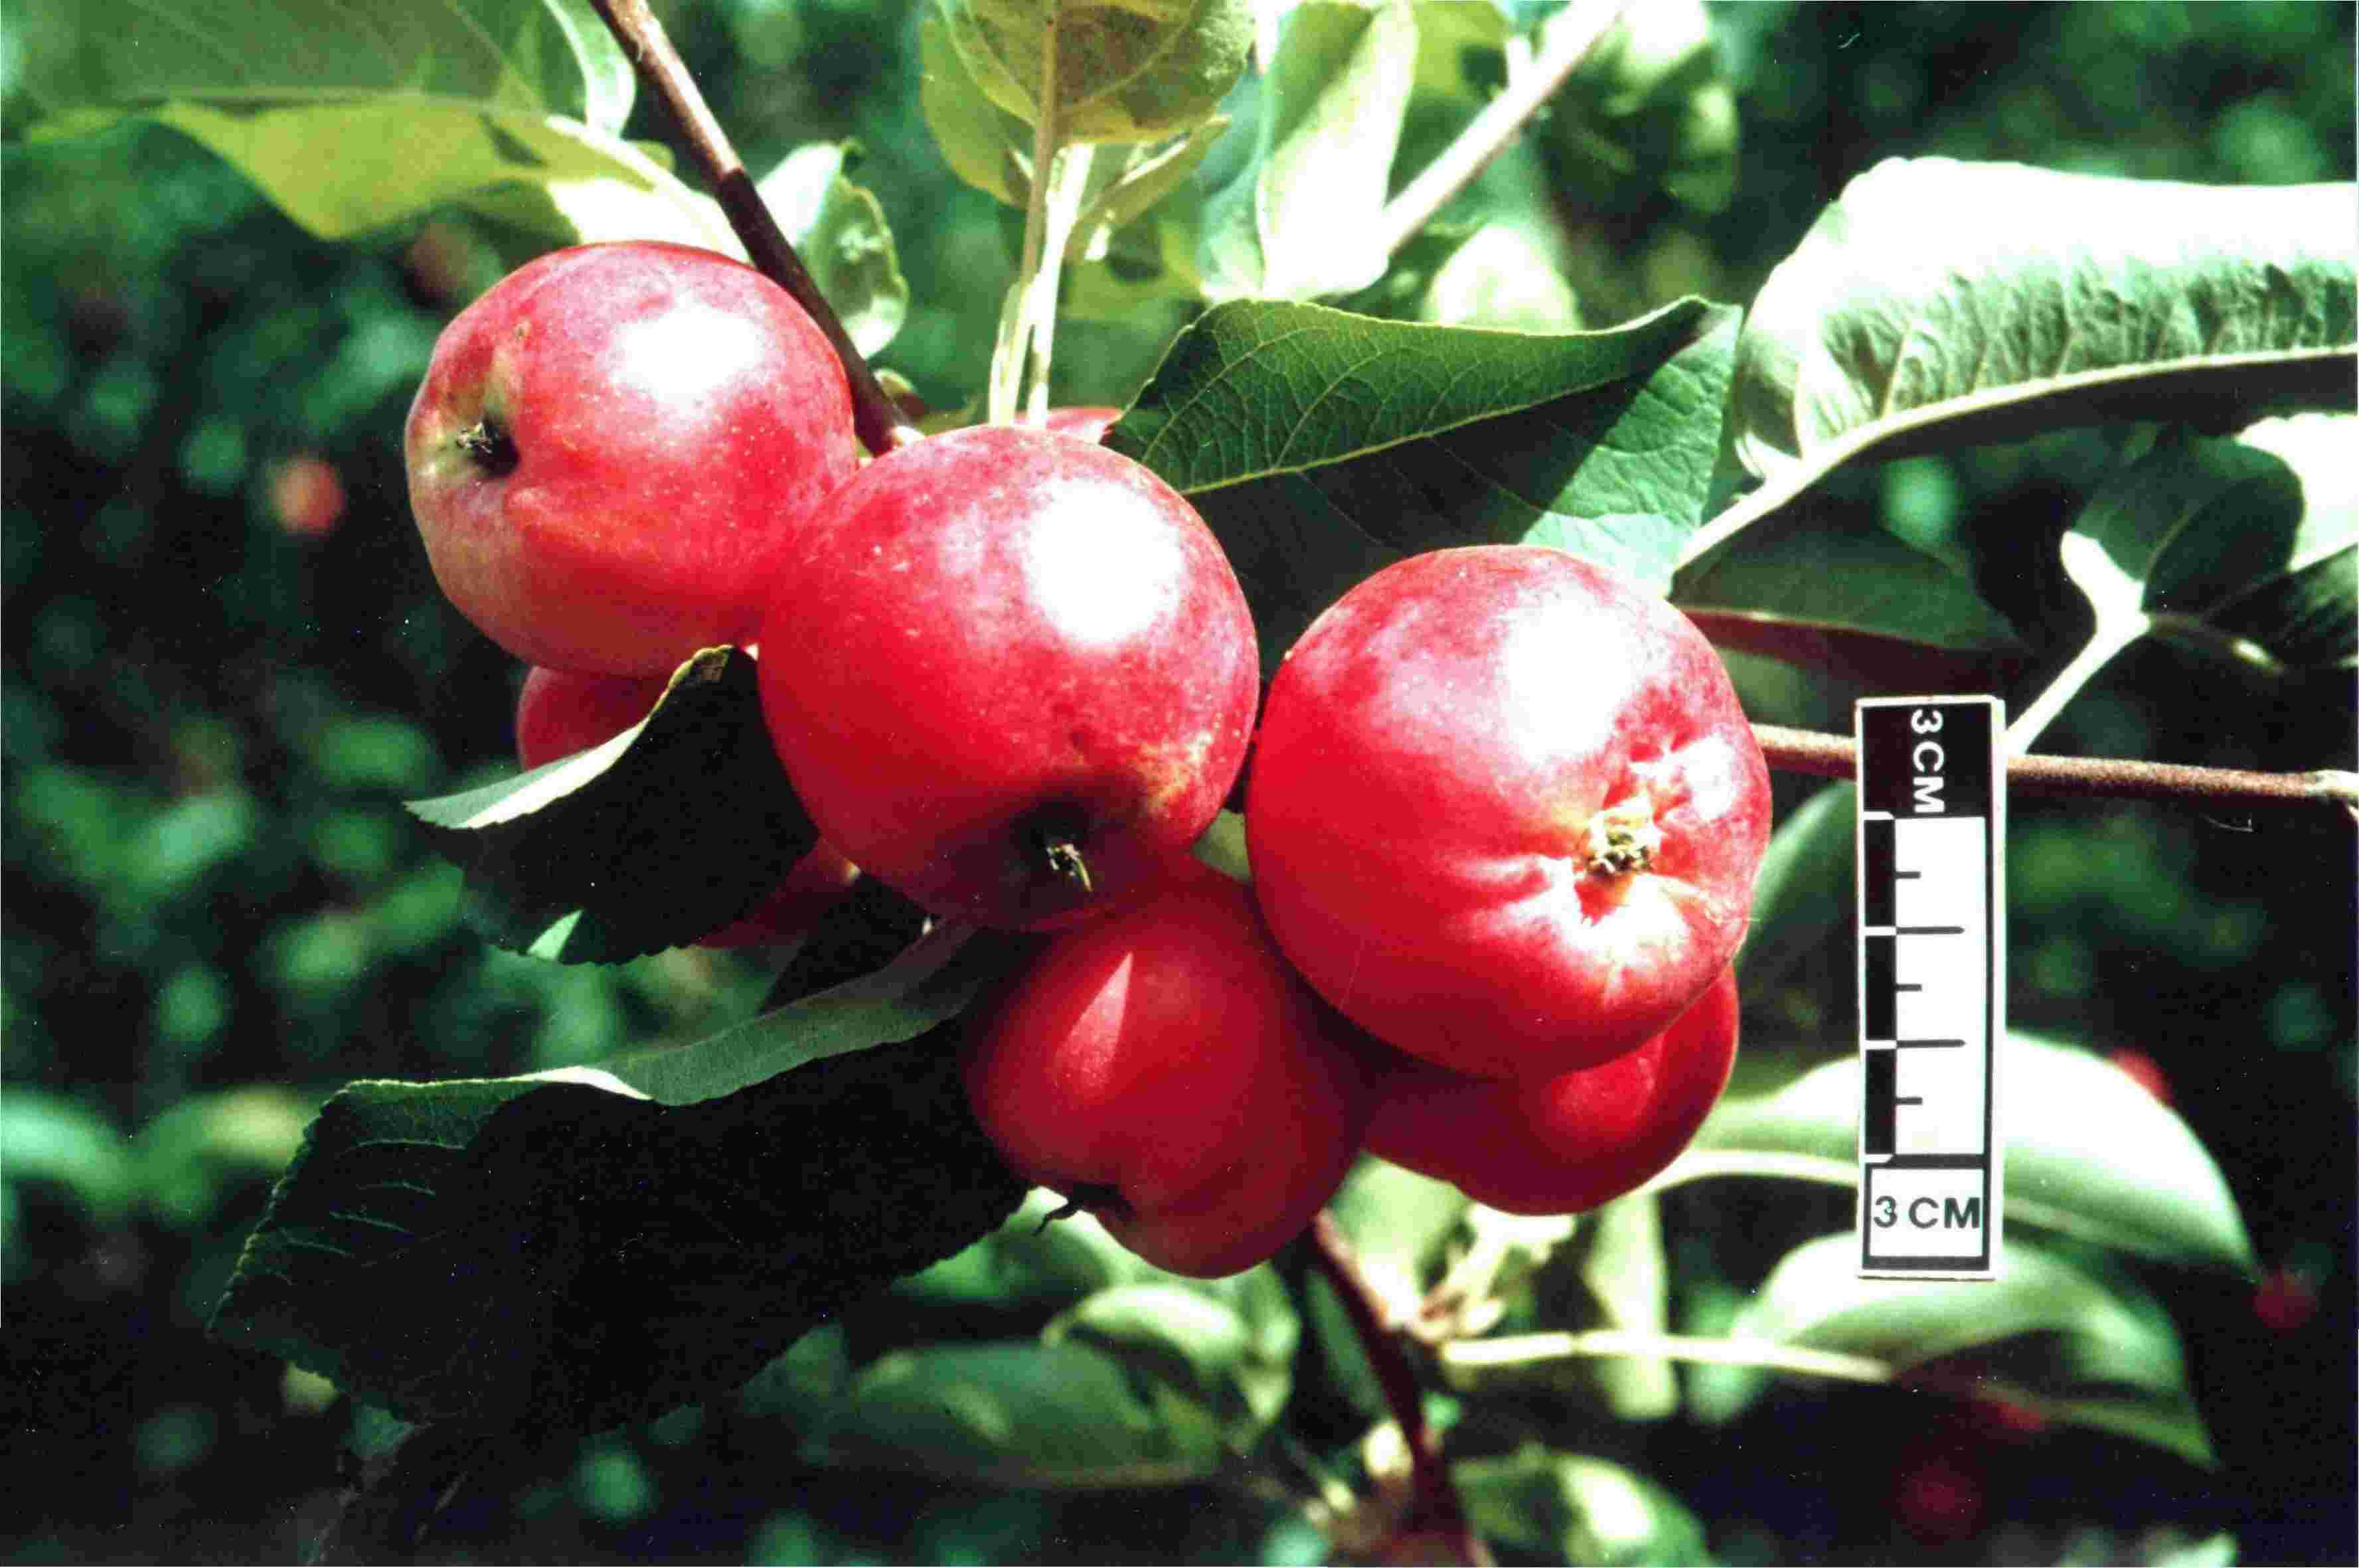 Описание сорта яблони моди: фото яблок, важные характеристики, урожайность с дерева